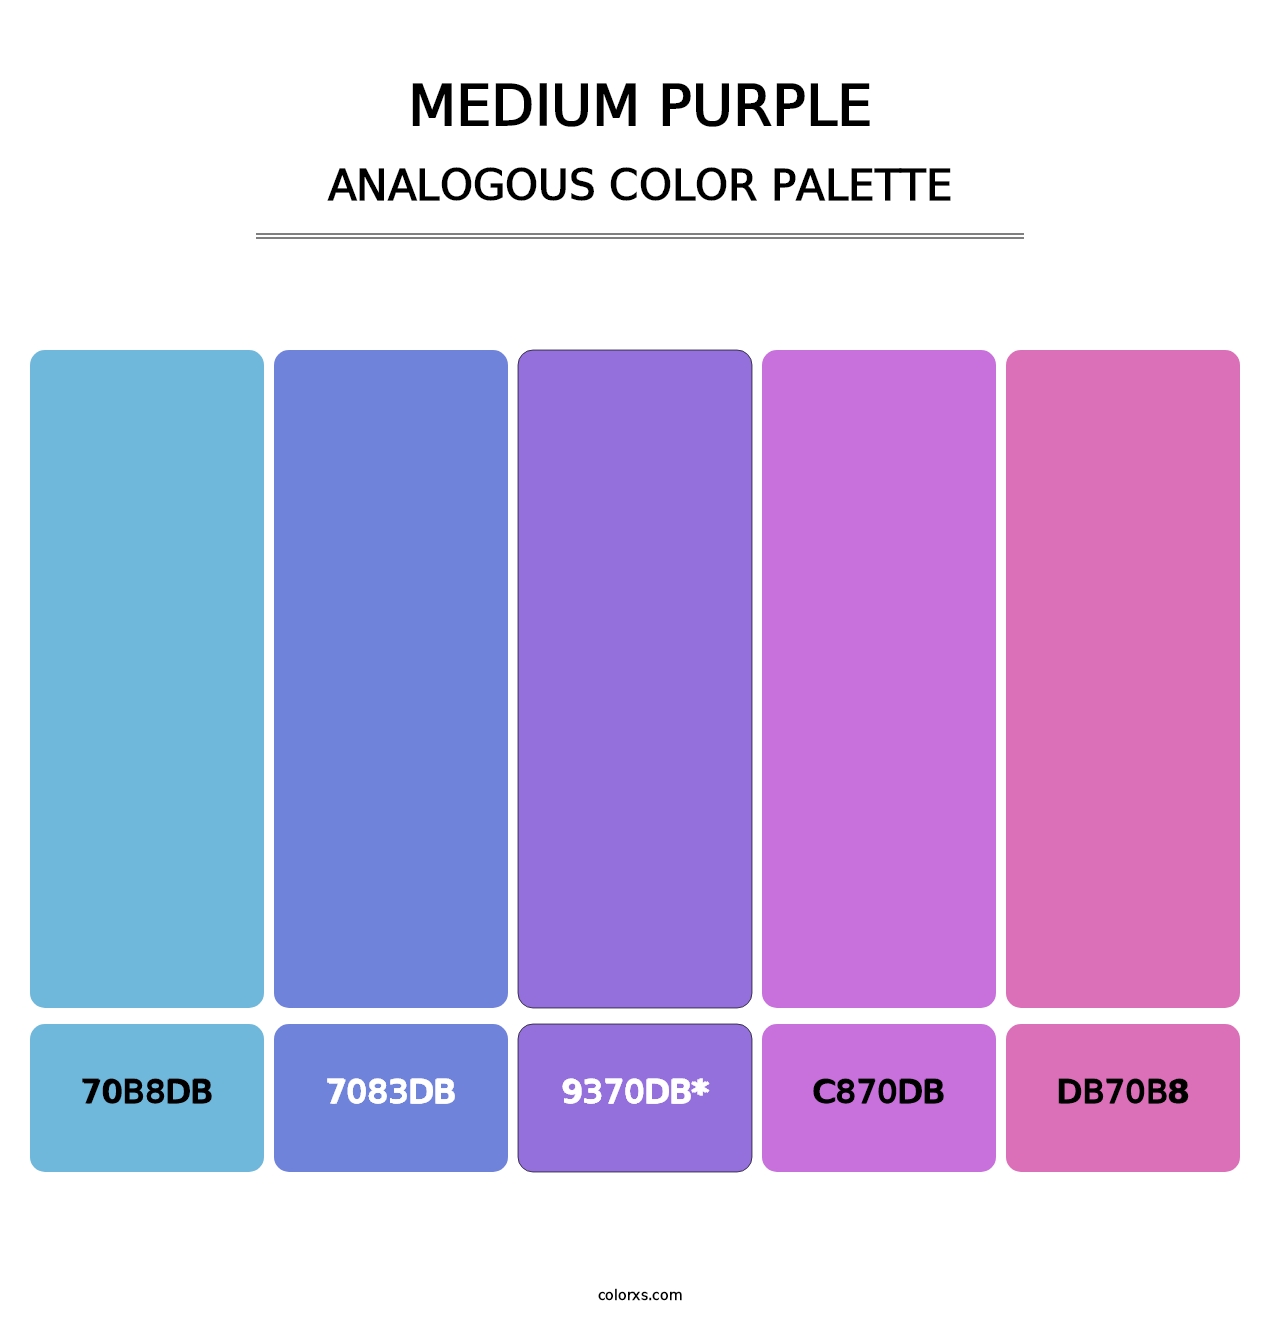 Medium Purple - Analogous Color Palette